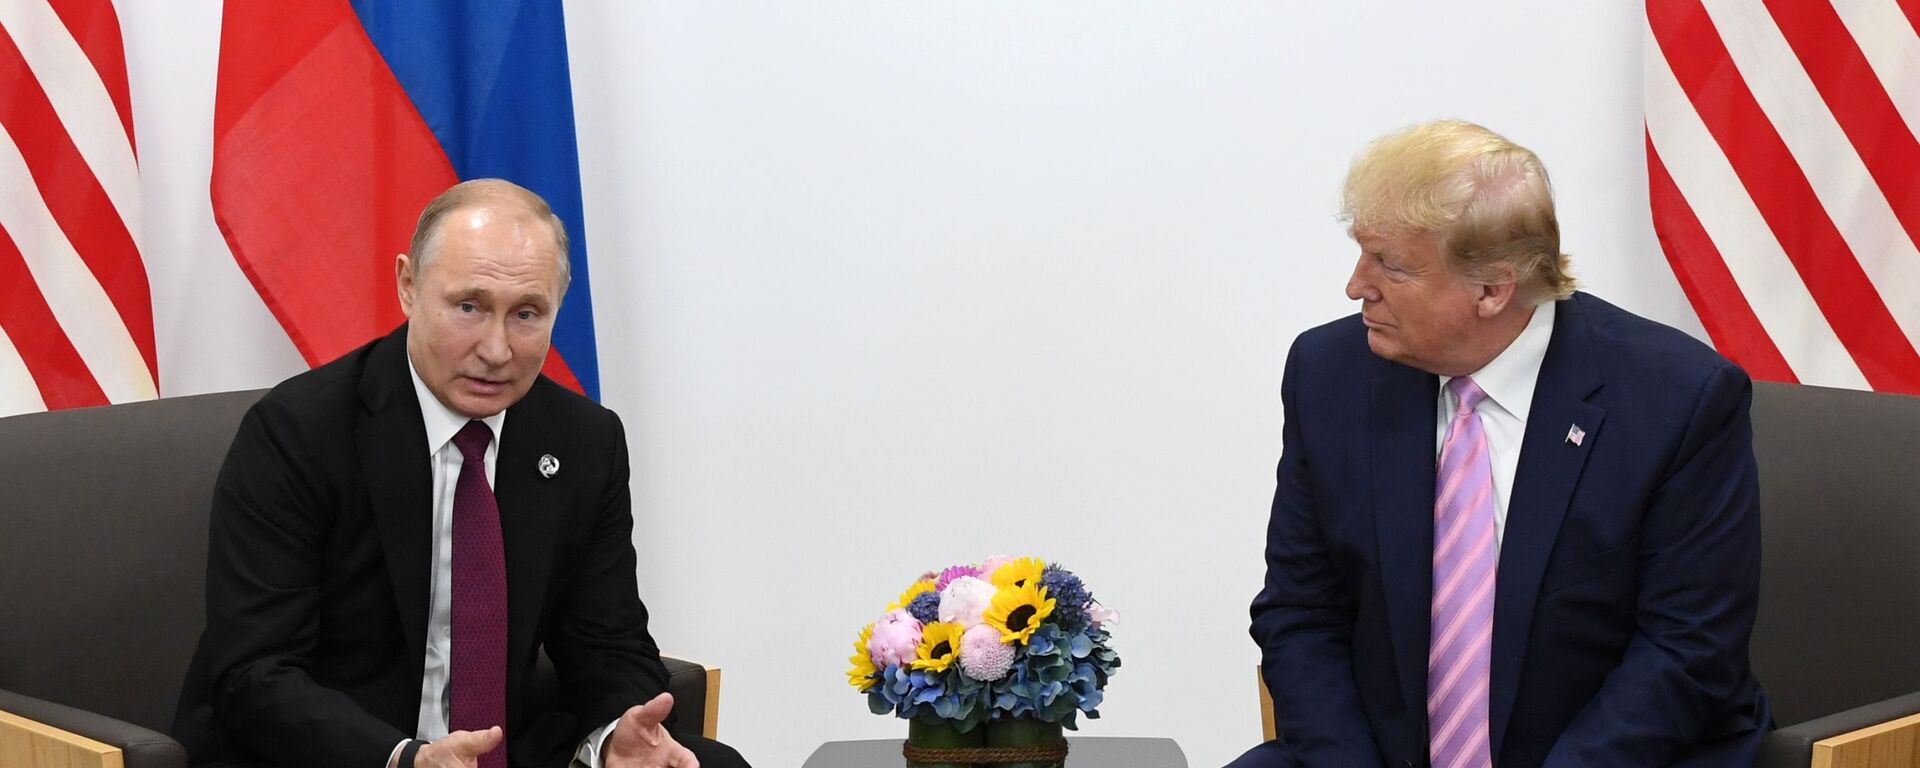 Donaldo Trampo ir Vladimiro Putino susitikimas - Sputnik Lietuva, 1920, 14.02.2021